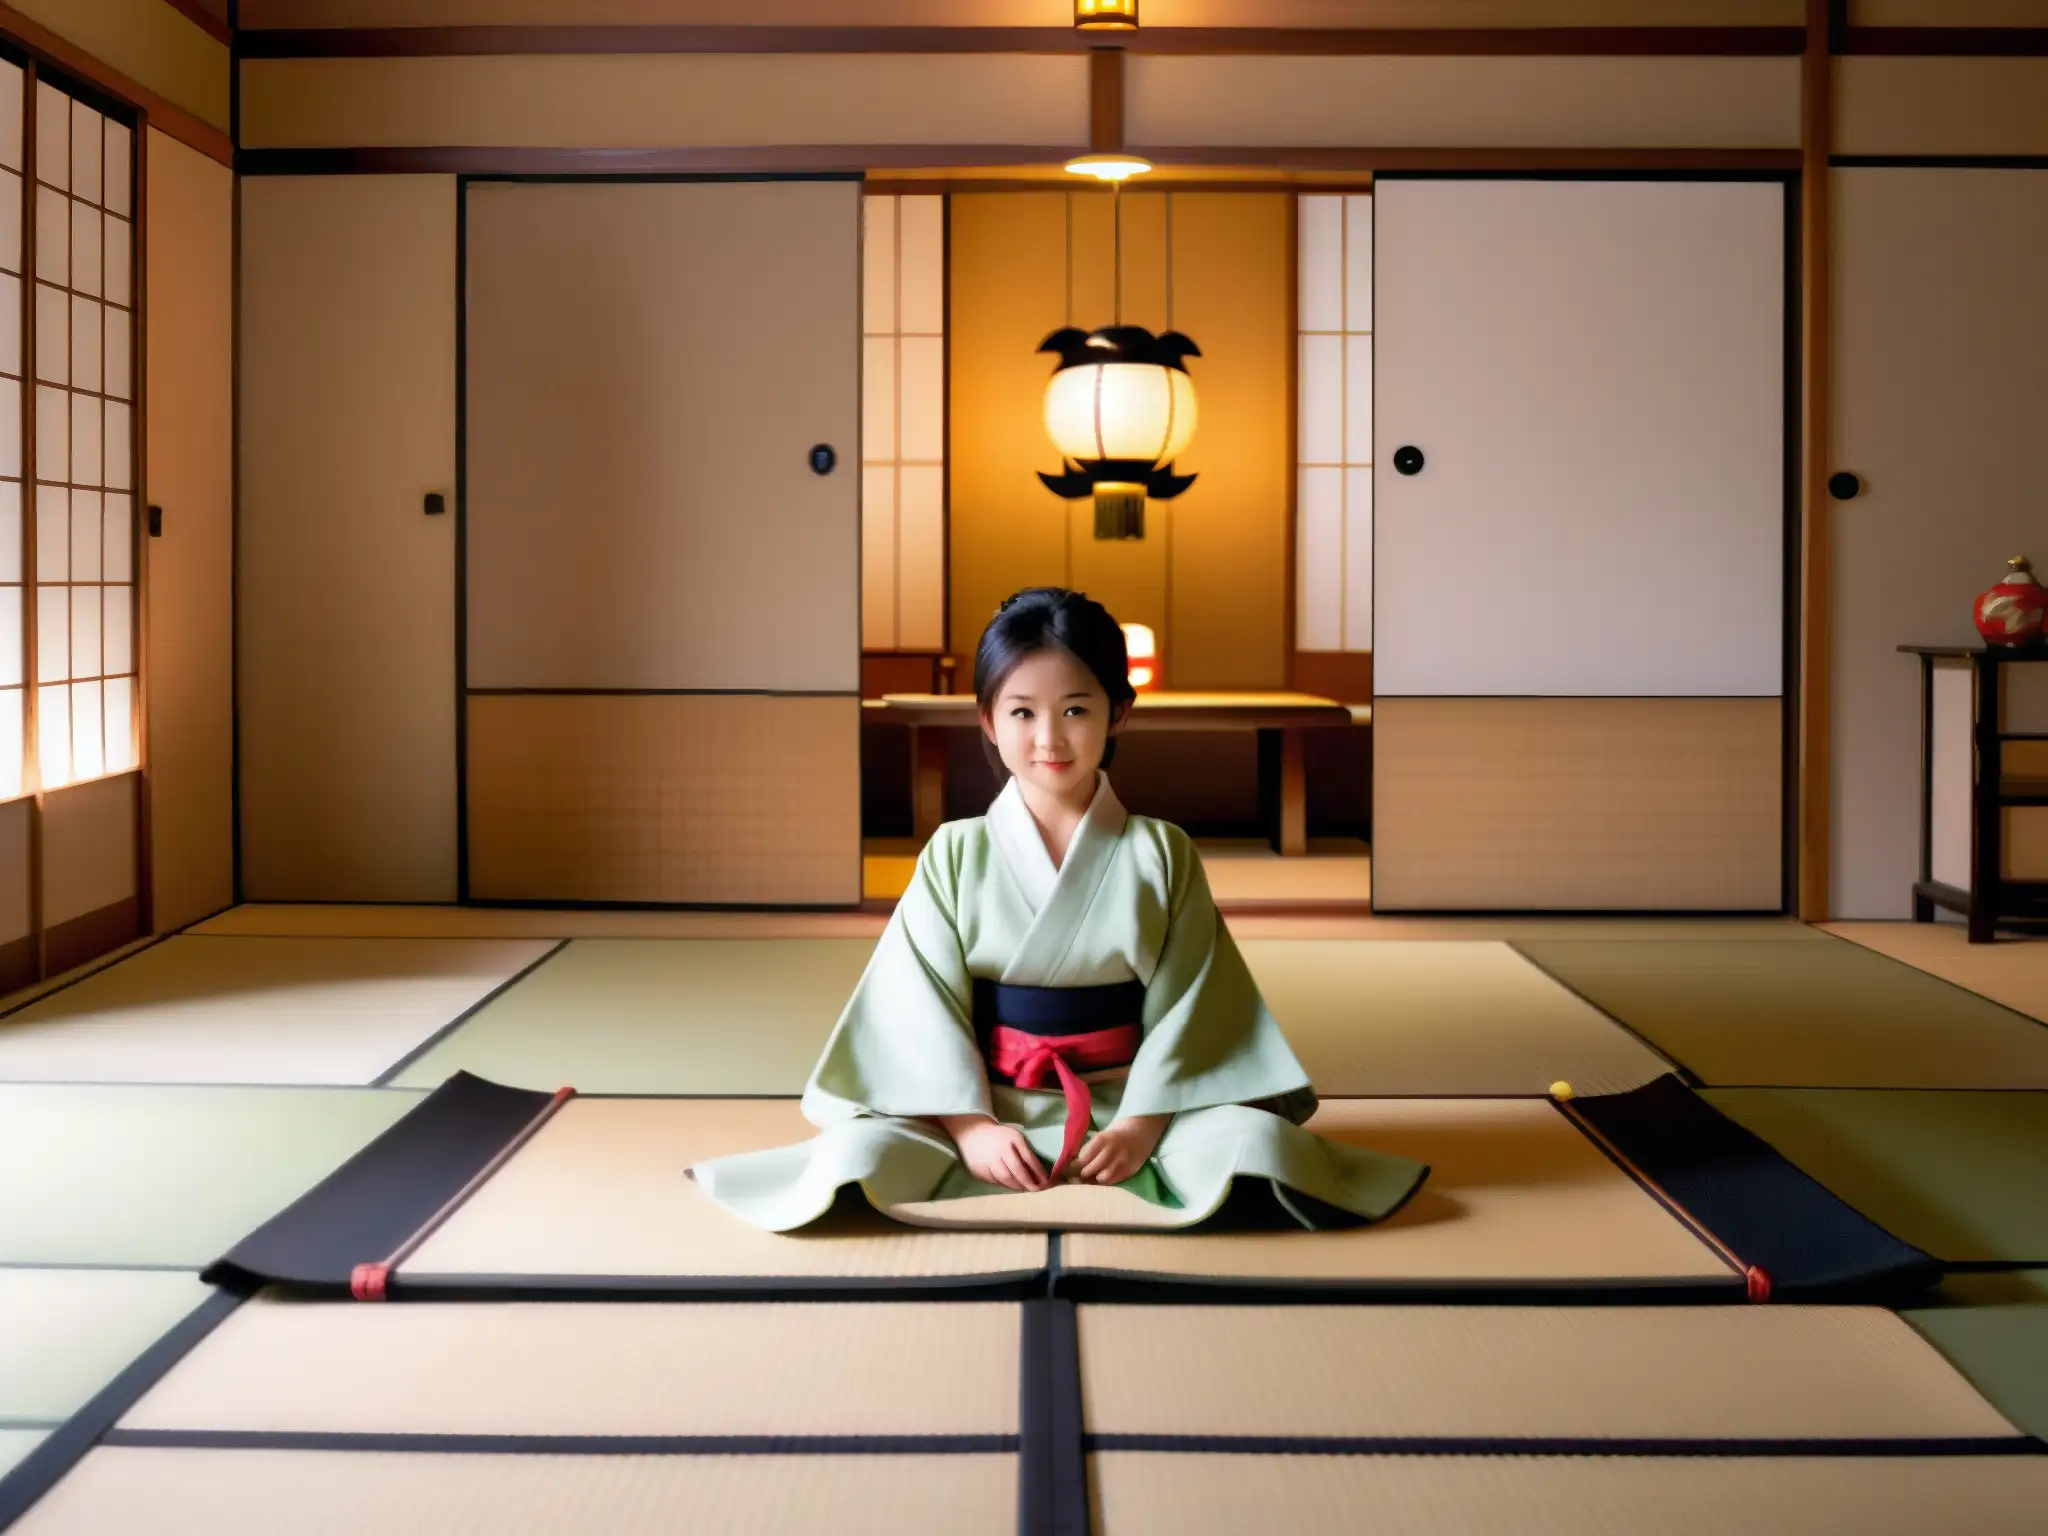 Un niño fantasma Zashikiwarashi juguetón en una habitación japonesa tradicional, creando una atmósfera etérea y misteriosa